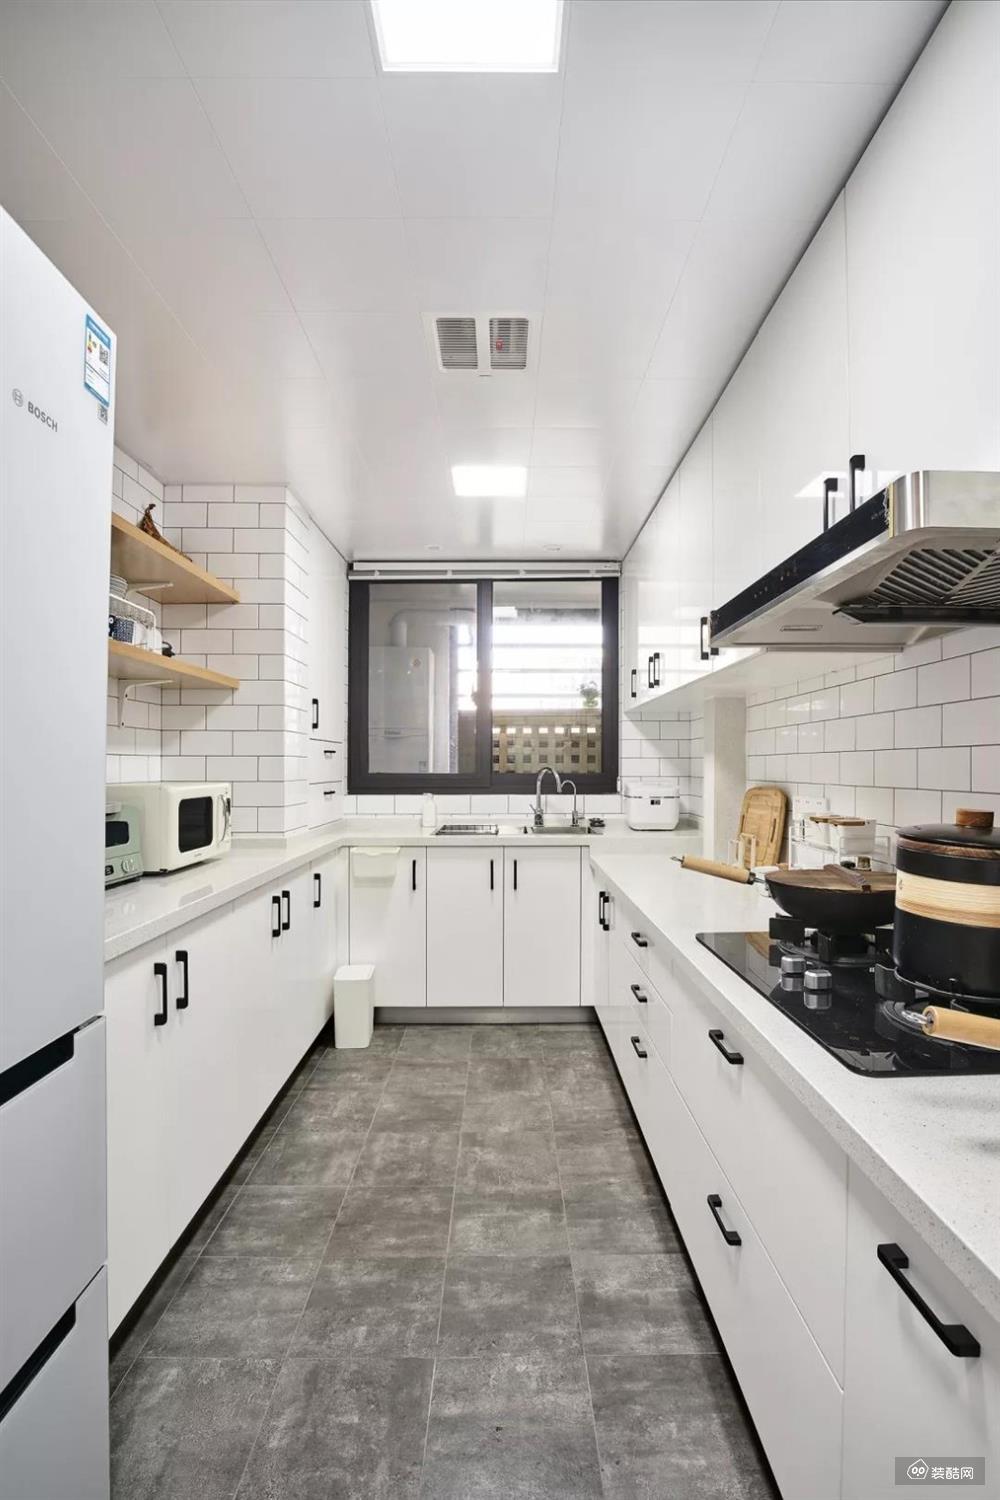 厨房内部的空间还是比较宽敞的，设计师选择了U字形的橱柜布局方案，让厨房动线变得更短，储物空间又更多，再加上白色与灰色的结合，简约而又轻松。